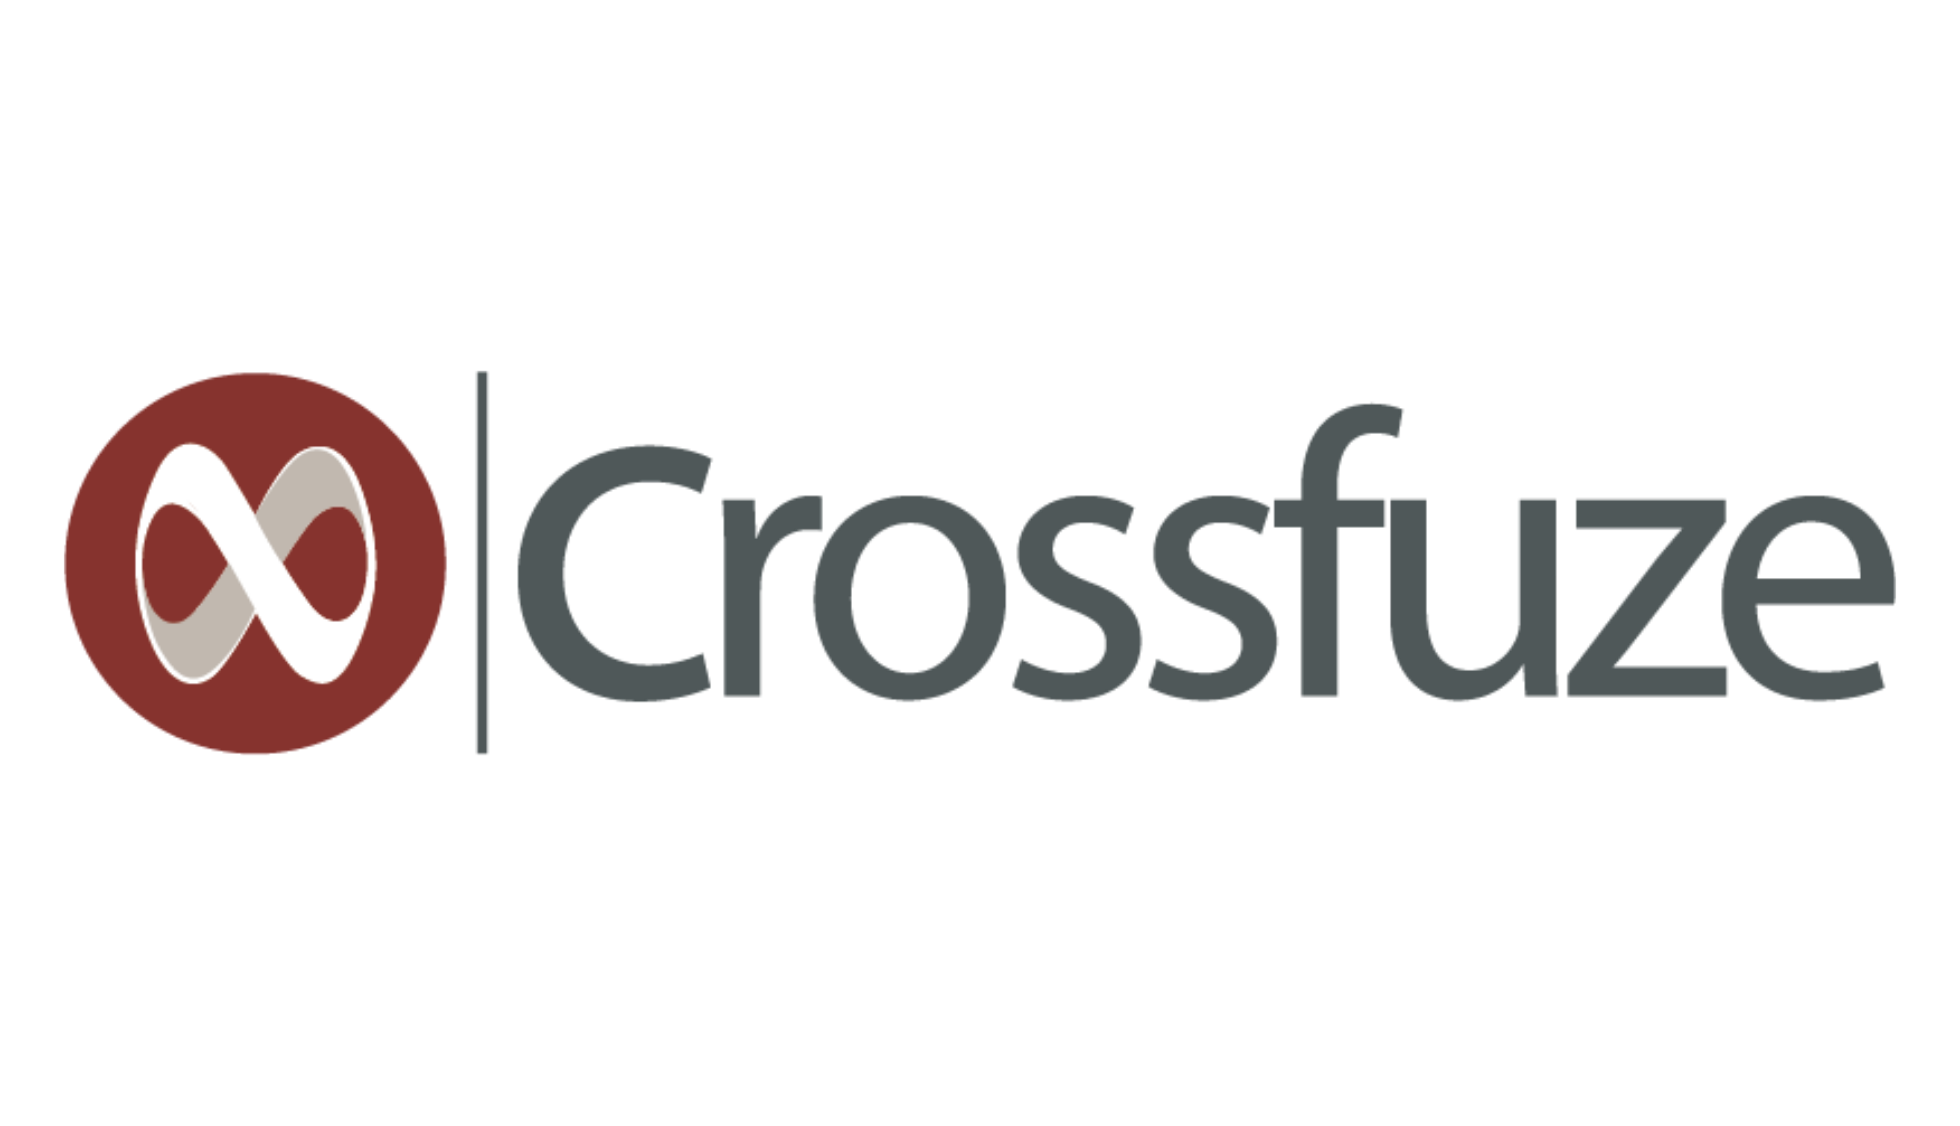 crossfuze logo